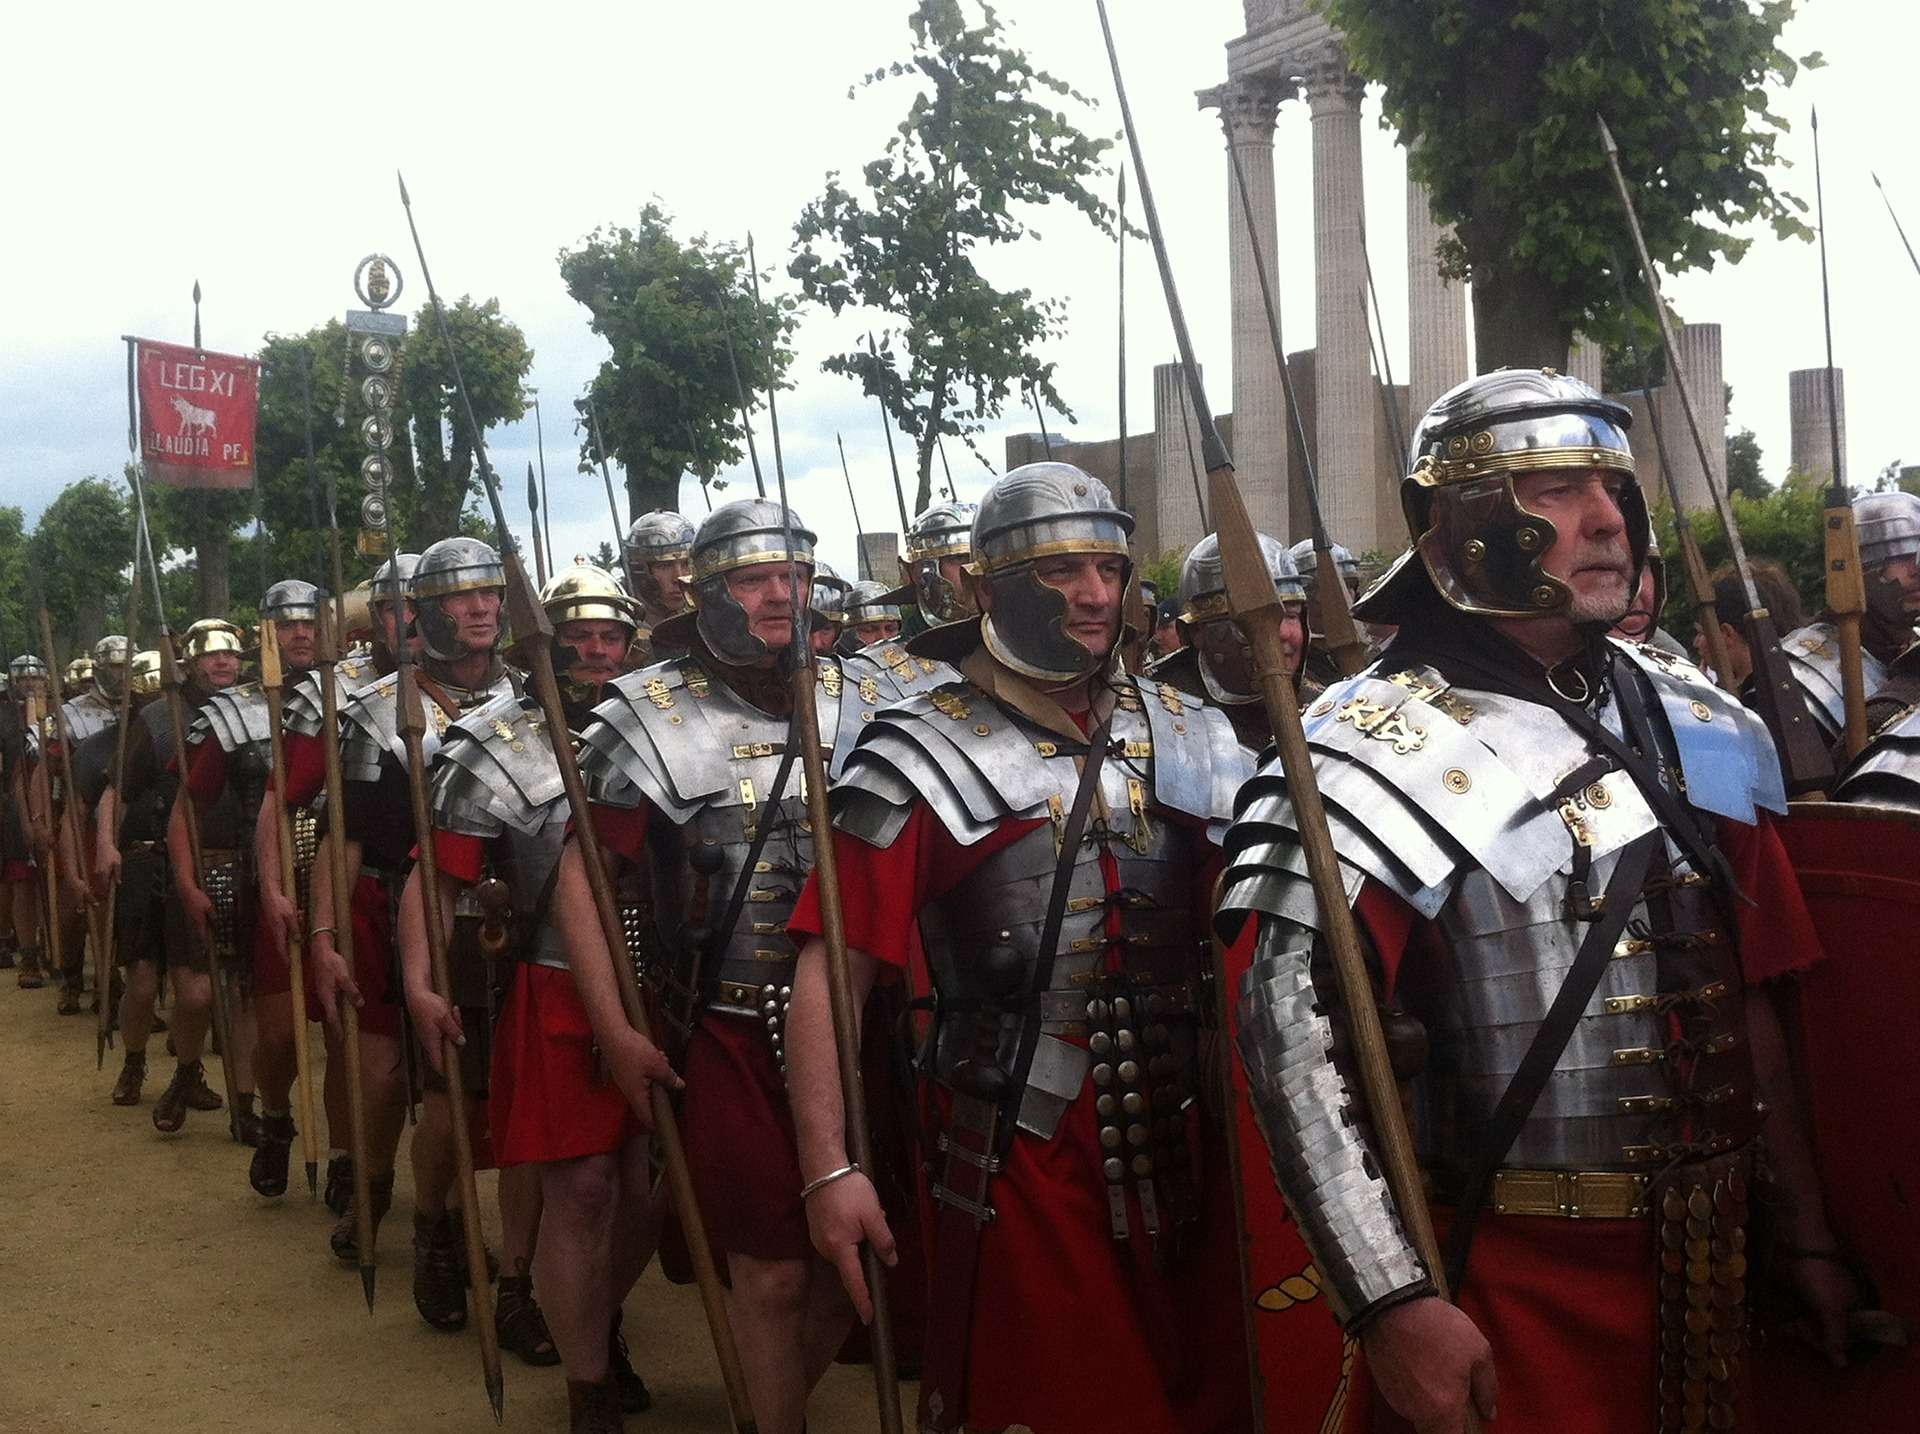 Esercito romano: Struttura, gradi, nomi, equipaggiamento e fatti